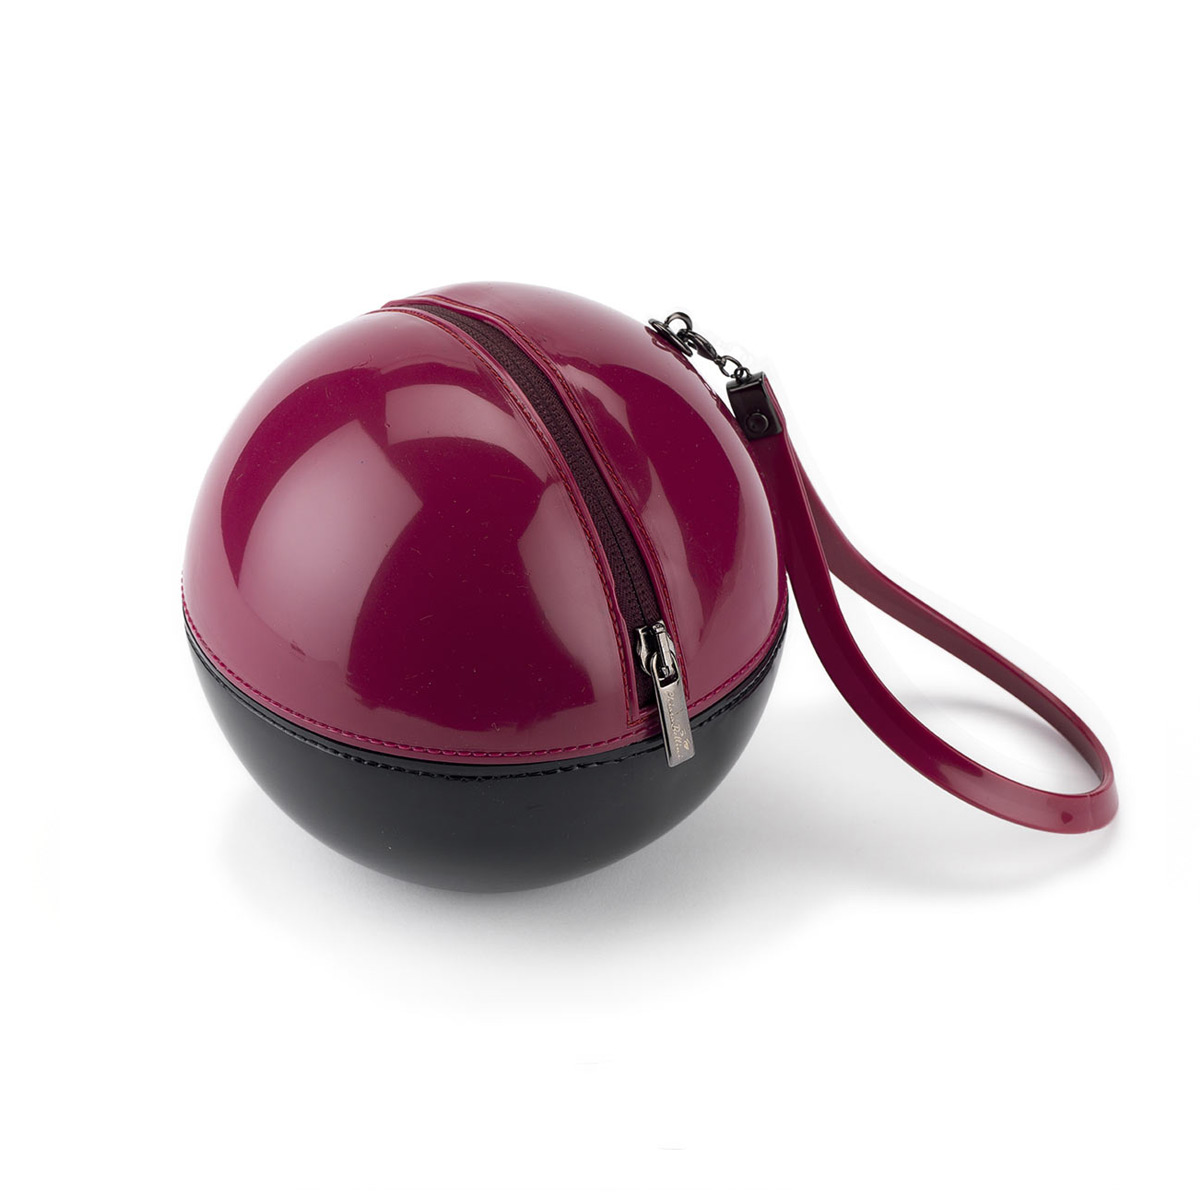 Borsa sfera “rock’n’ball” bicolore in pvc lucido